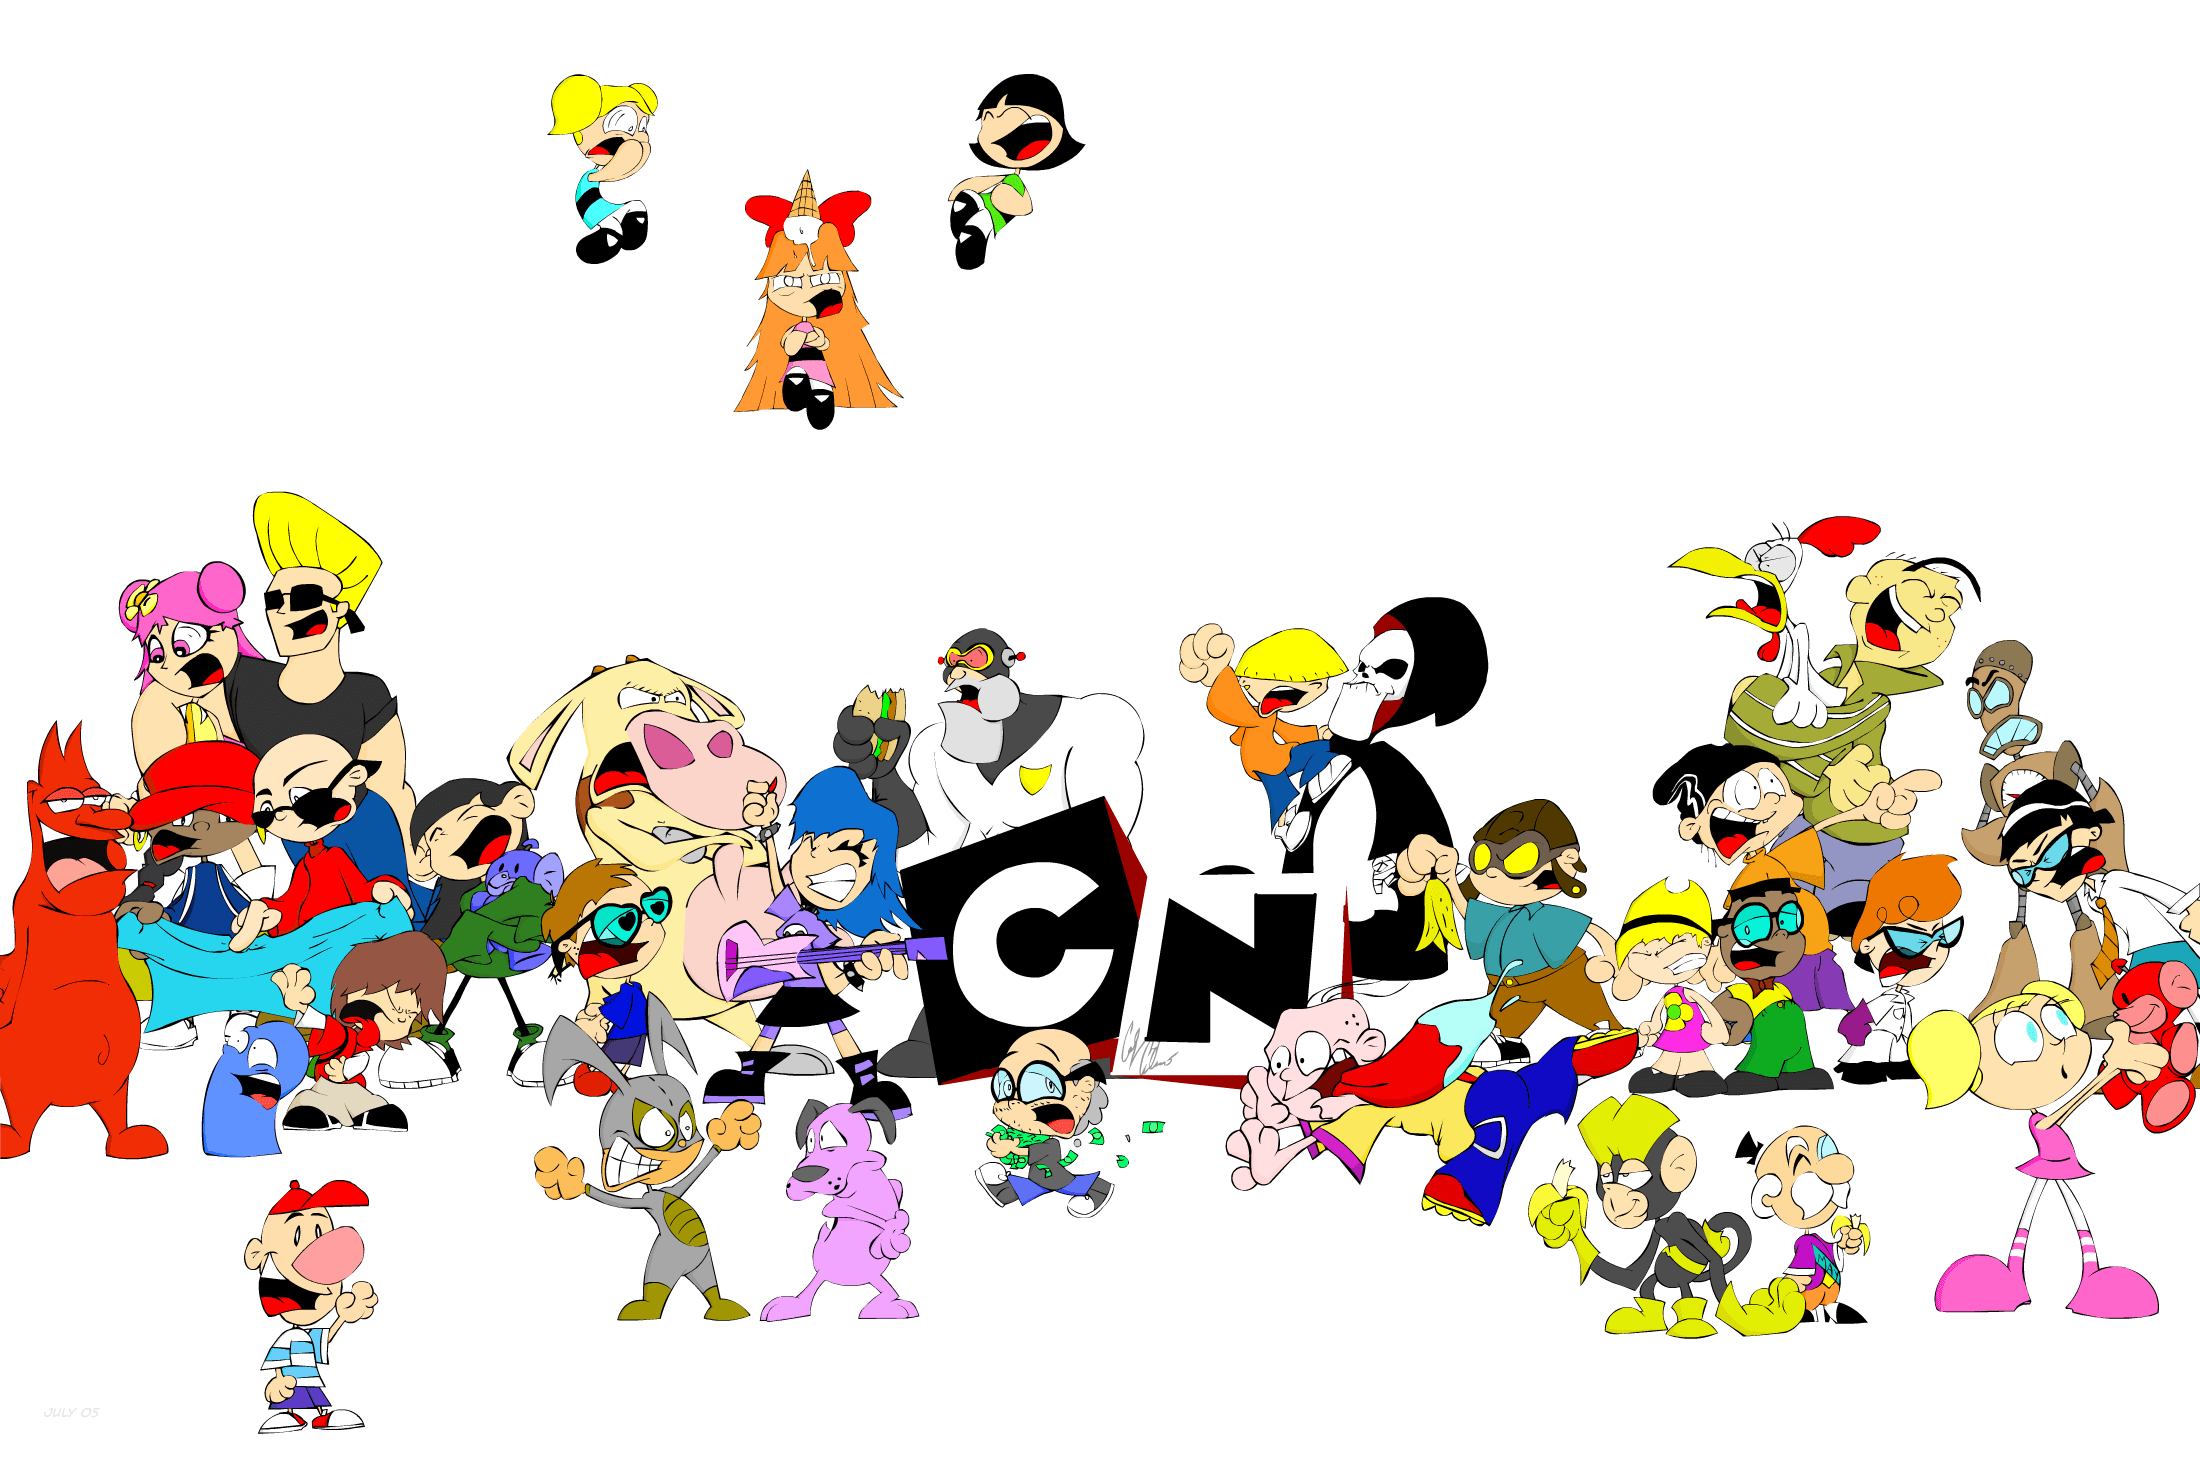 HD Cartoon Network Character Wallpaper. High Definition Wallpaper